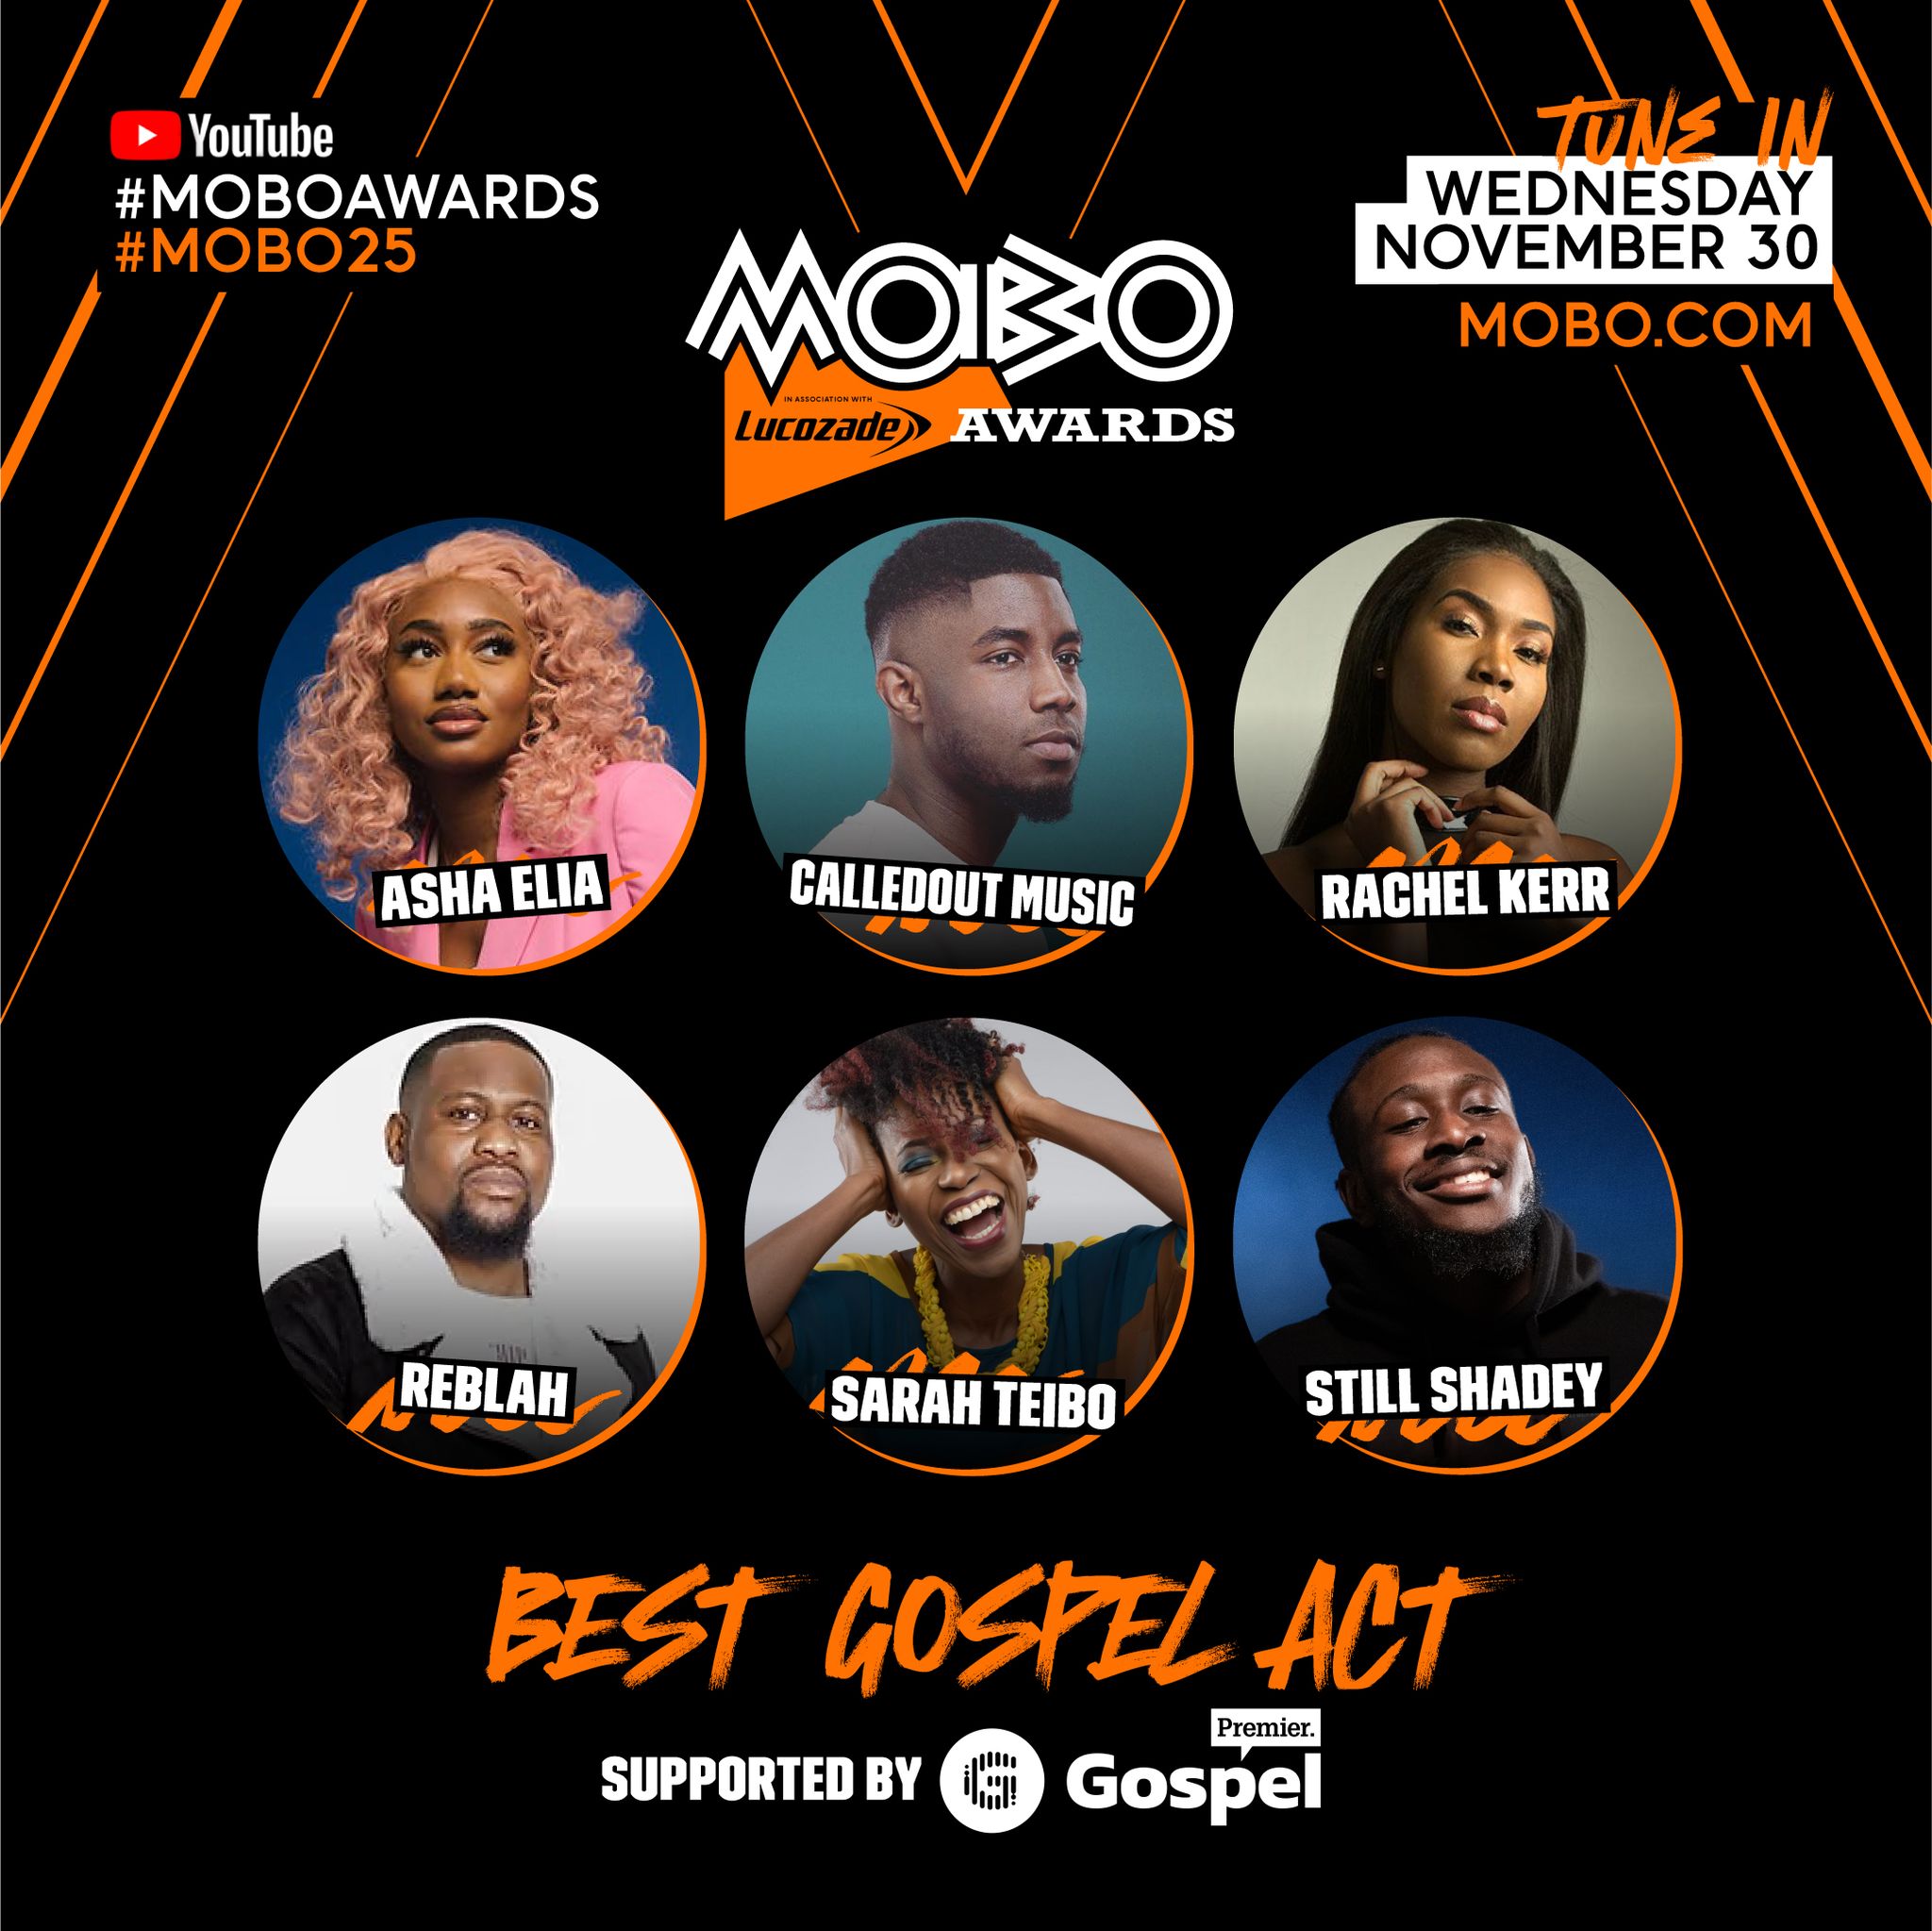 MOBO Awards Nominees For Best Gospel Artist Announced